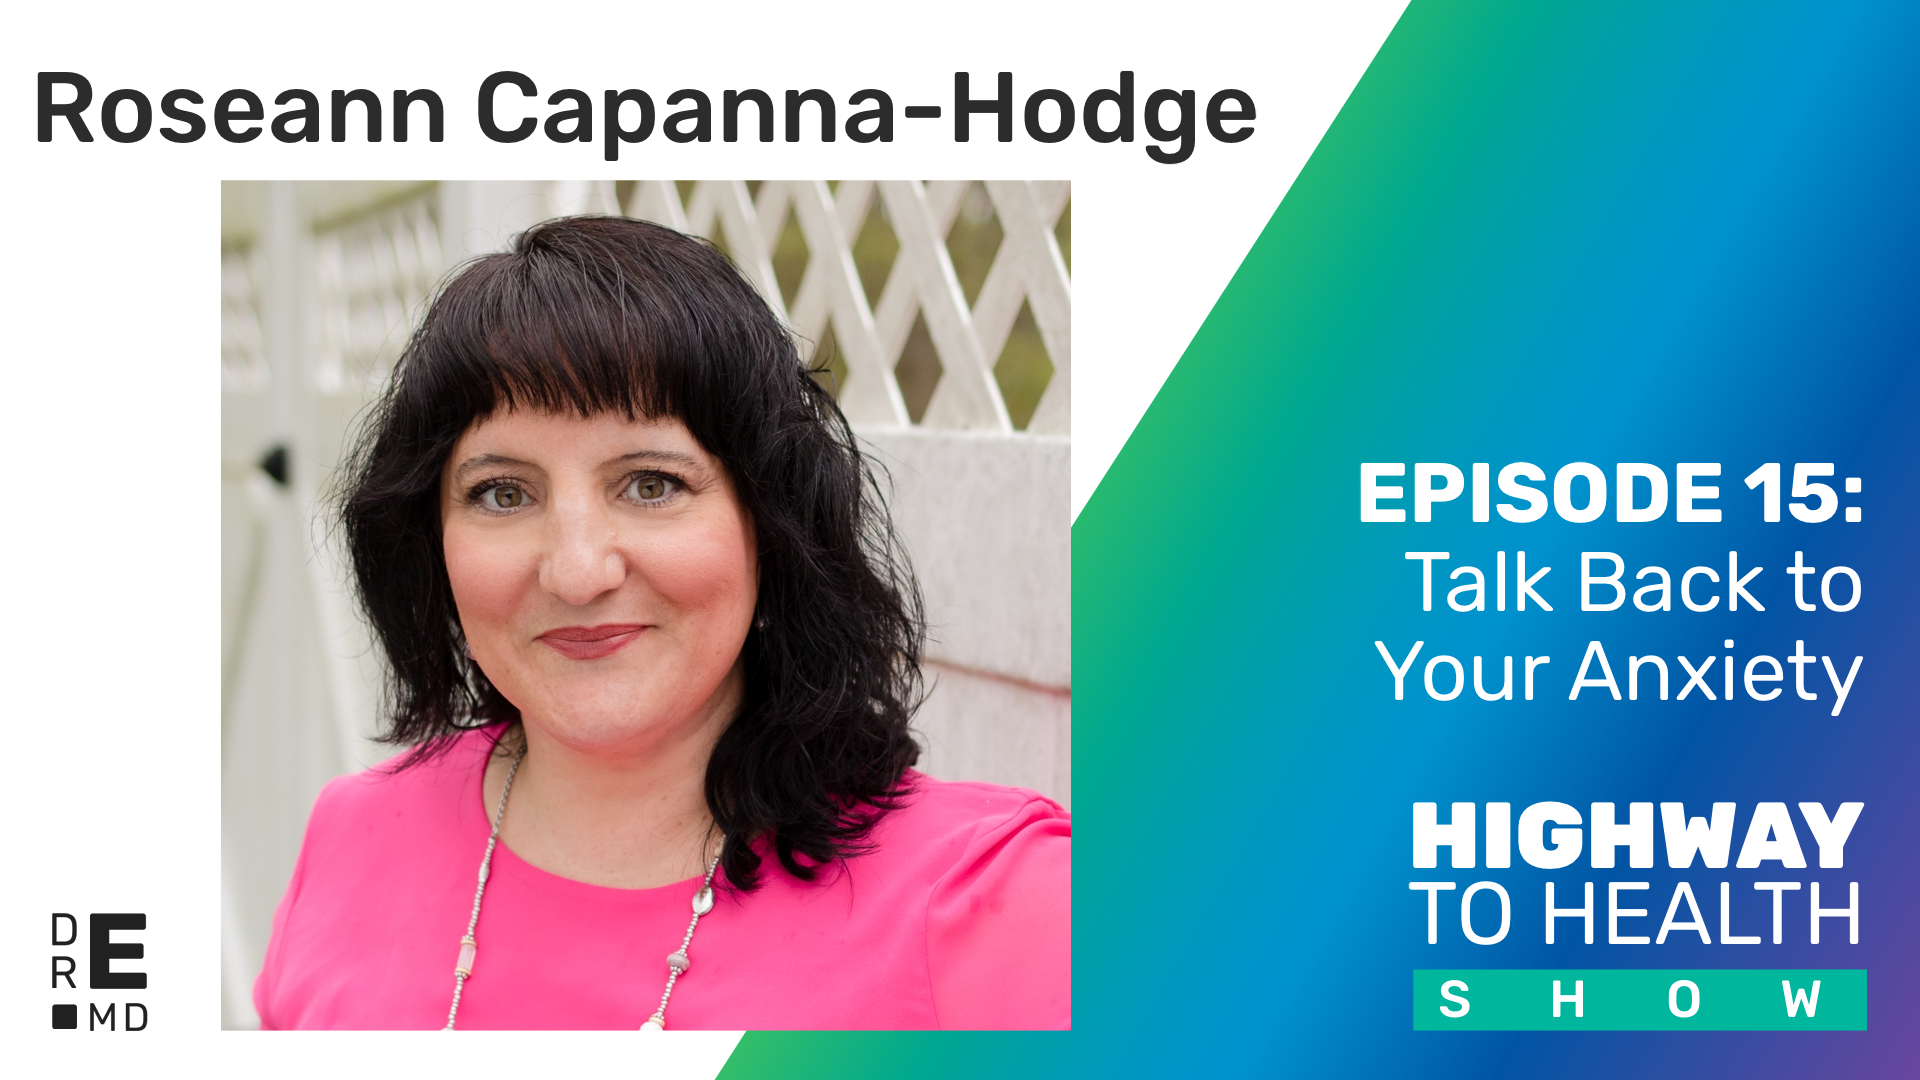 Highway to Health: Ep 15 - Dr Roseann Capanna-Hodge